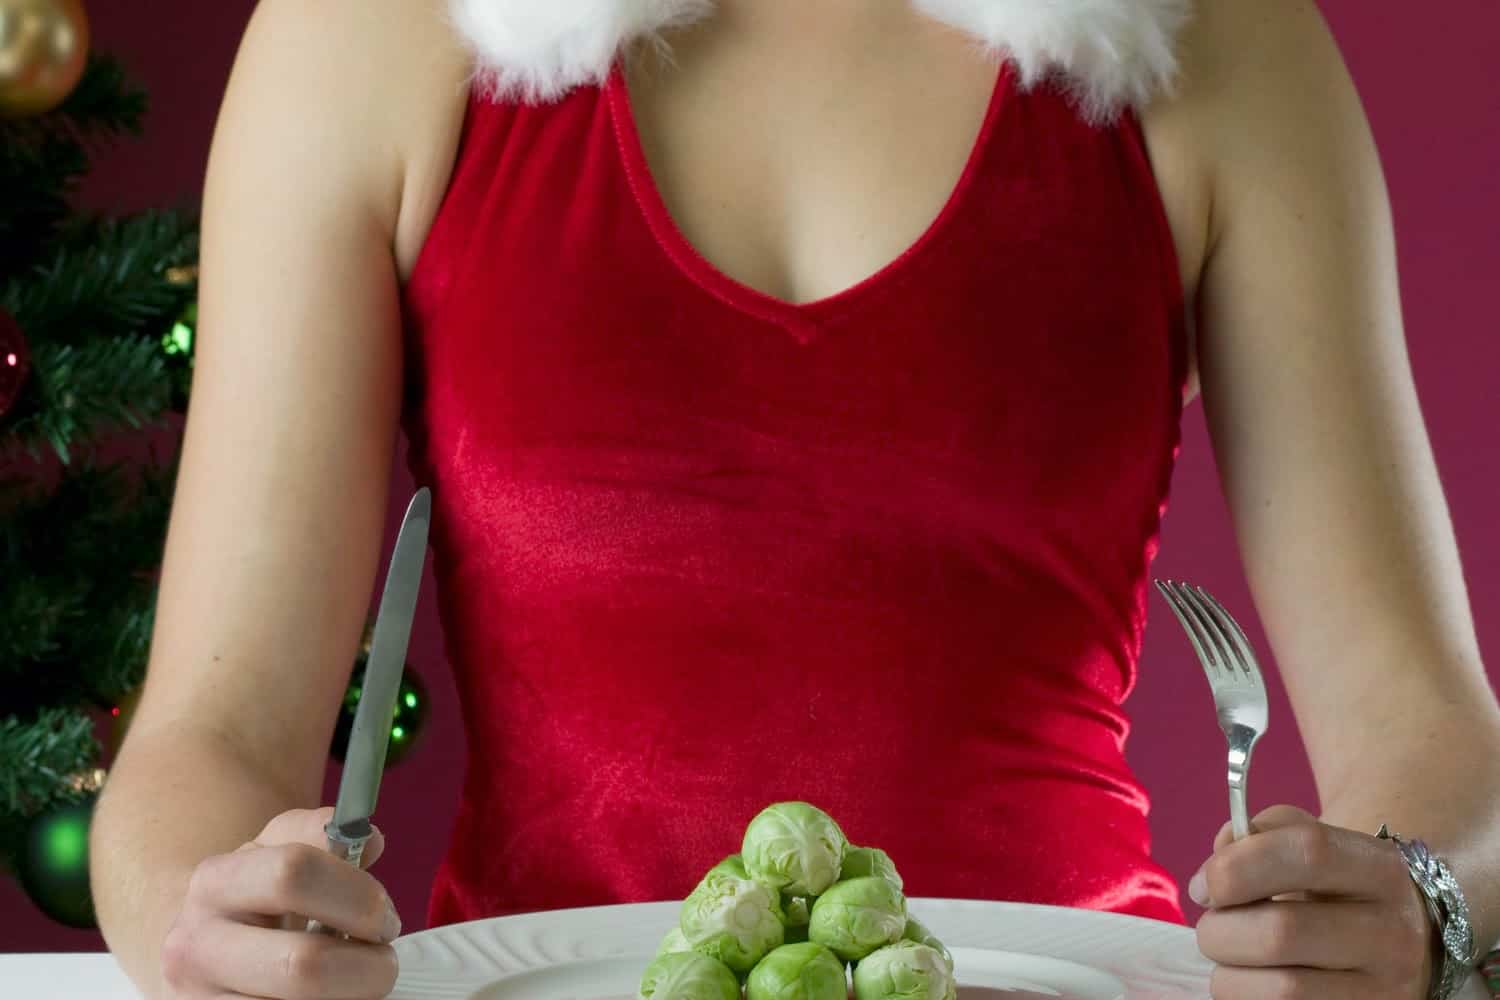 δίαιτα-με-έμφαση-στο-βραδινό-για-να-χάσουμε-τα-κιλά-πριν-τα-Χριστούγεννα-